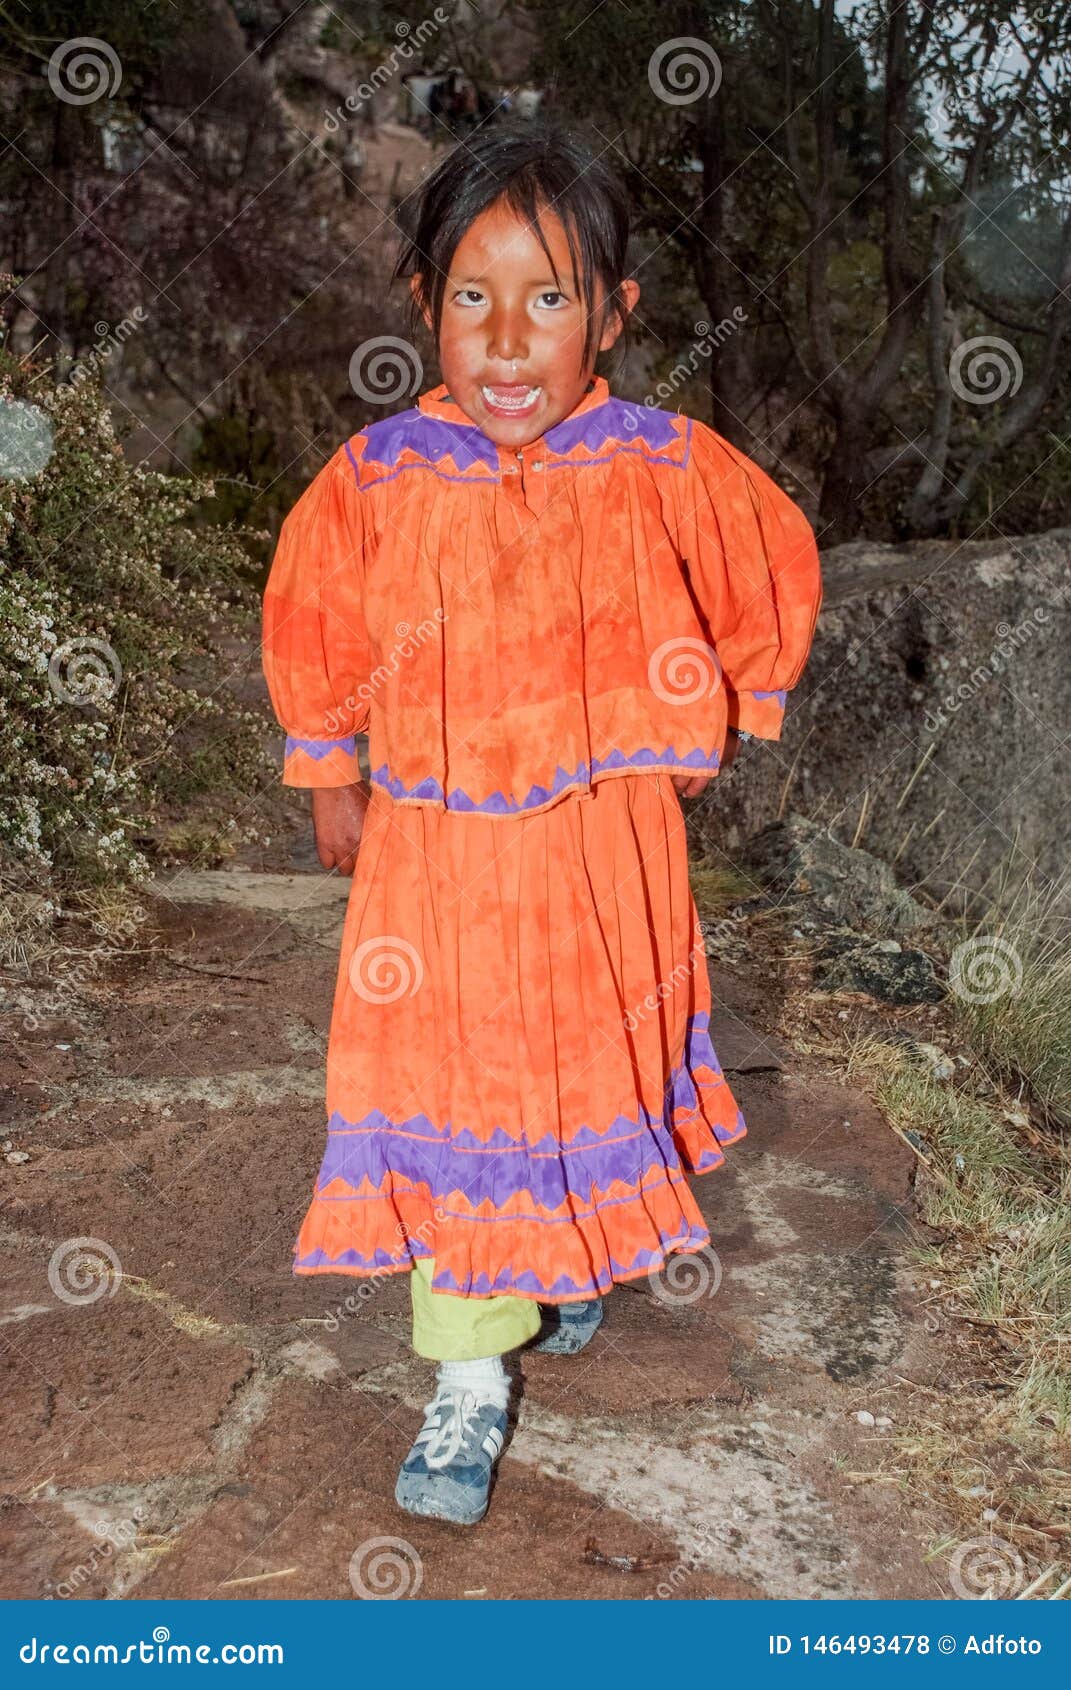 373 Tarahumara Photos Free Royalty Free Stock Photos From Dreamstime